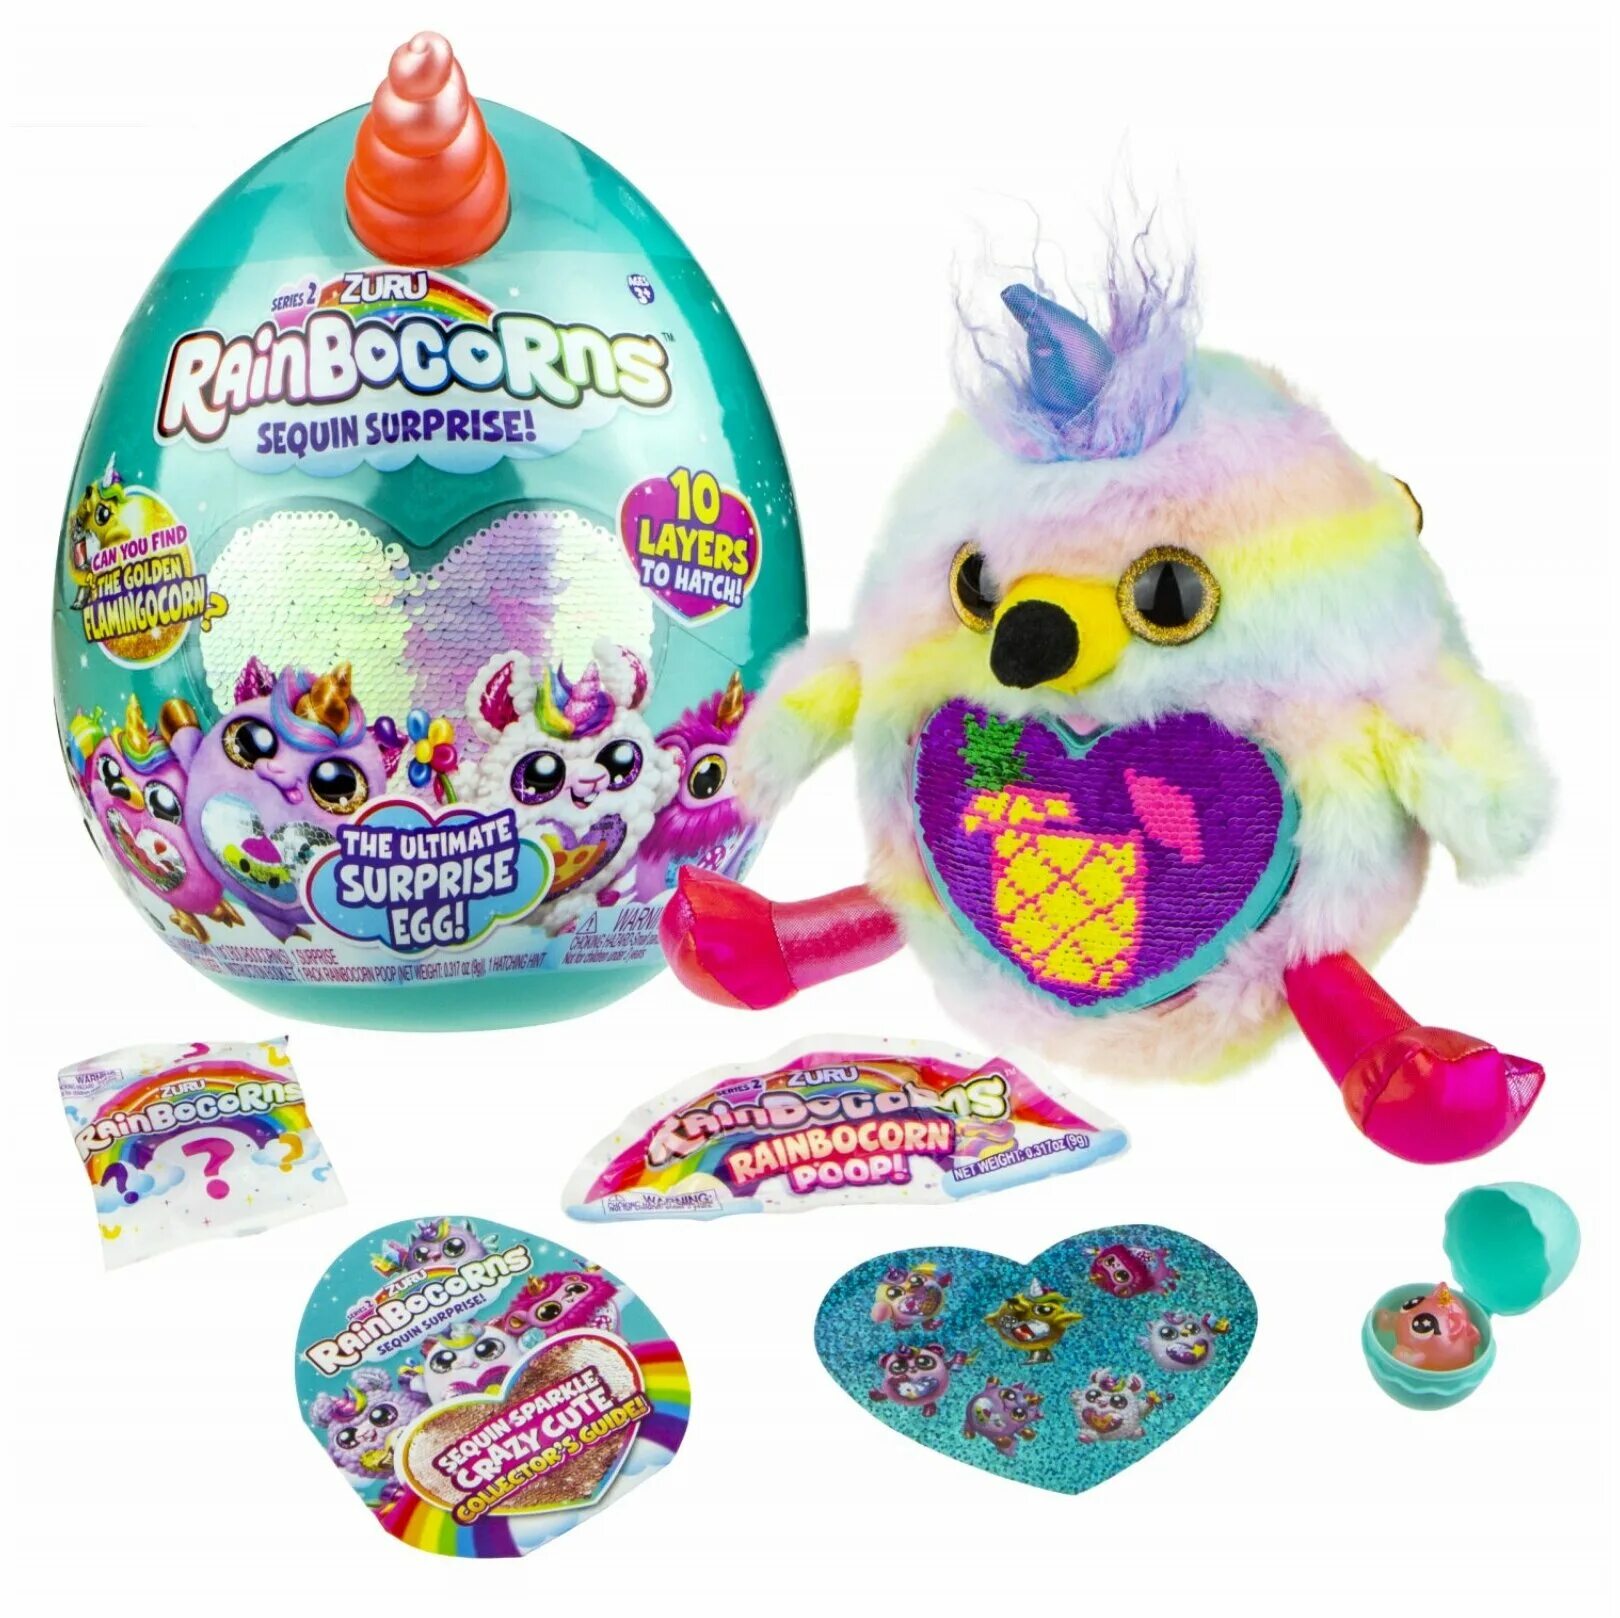 Купить яйцо детям. Игрушка Zuru Rainbocorns s2. Rainbocorns игрушка s2. Яйцо Zuru Rainbocorns. Игрушка плюш -сюрприз Rainbocorns.